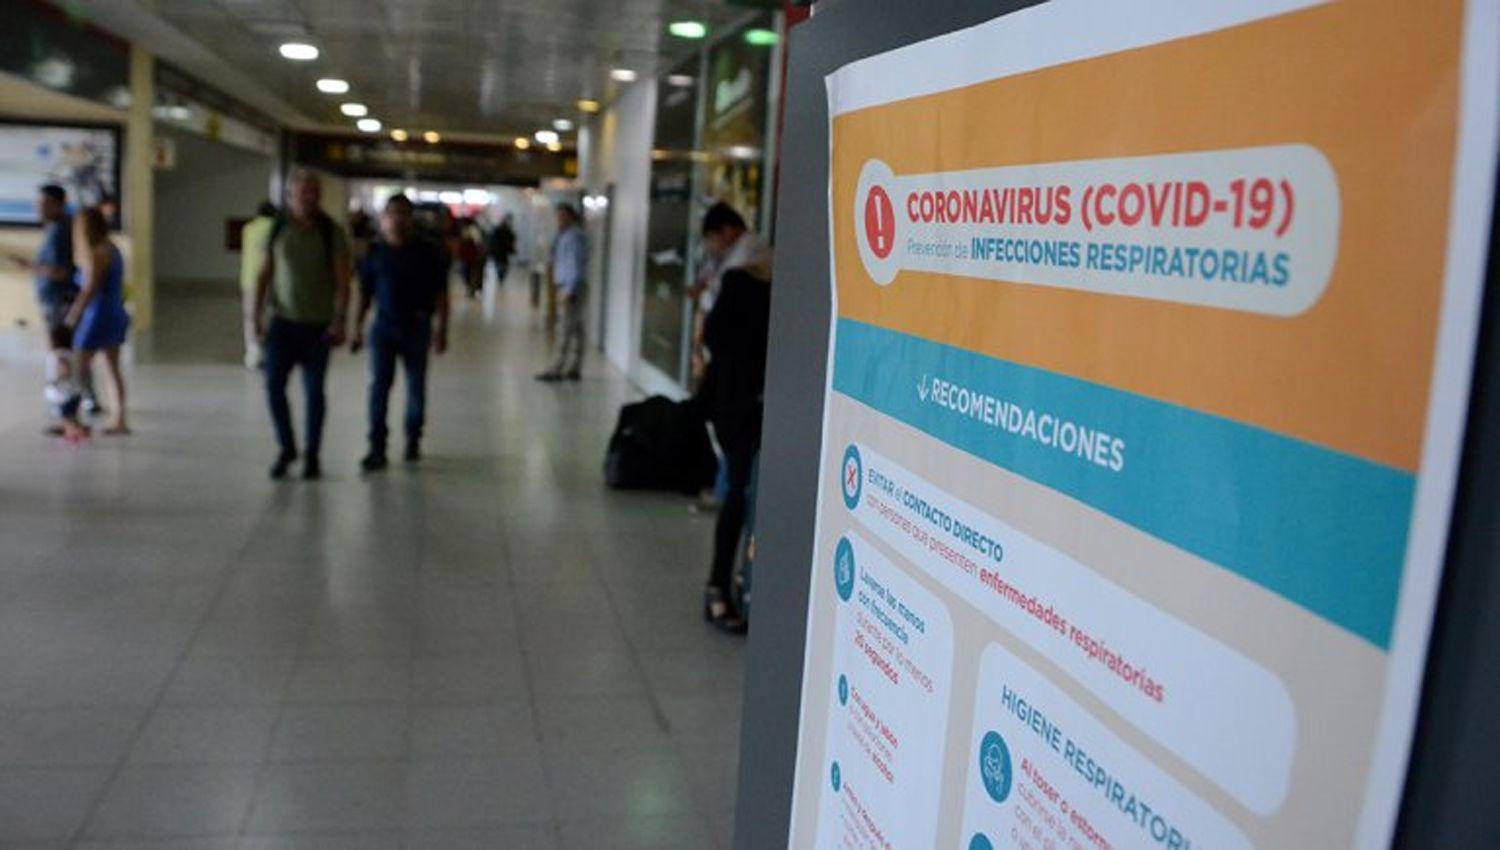 La muerte de otro hombre en Neuqueacuten eleva a 61 las viacutectimas de coronavirus en Argentina